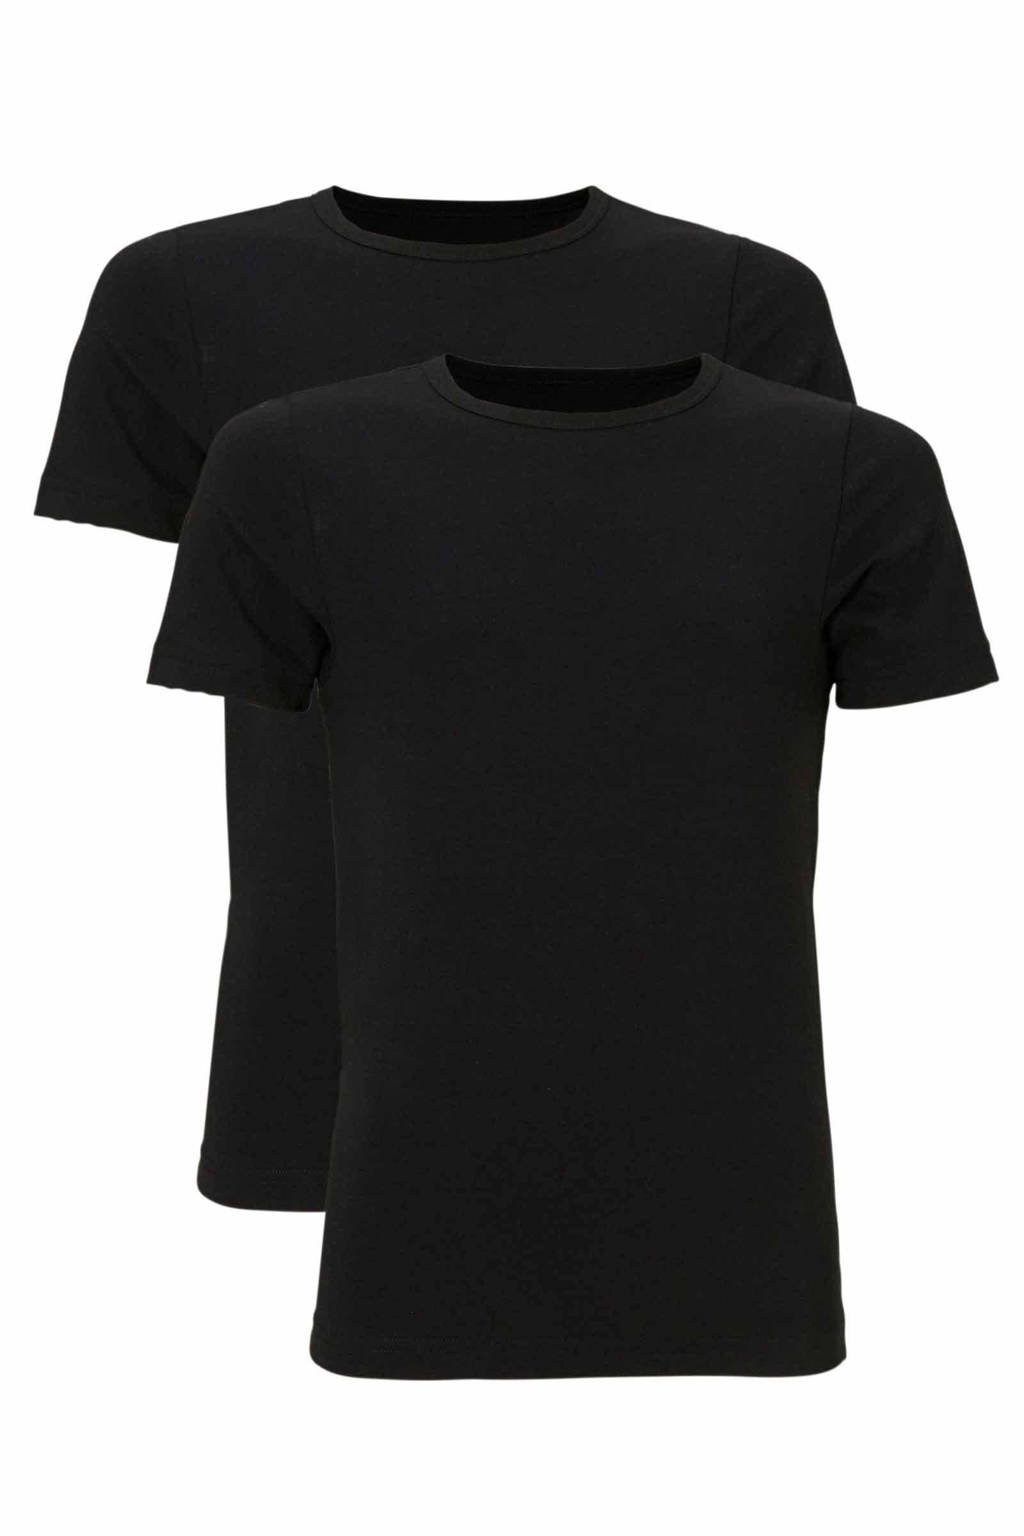 Set van 2 zwarte jongens whkmp's own T-shirt van katoen met korte mouwen en ronde hals